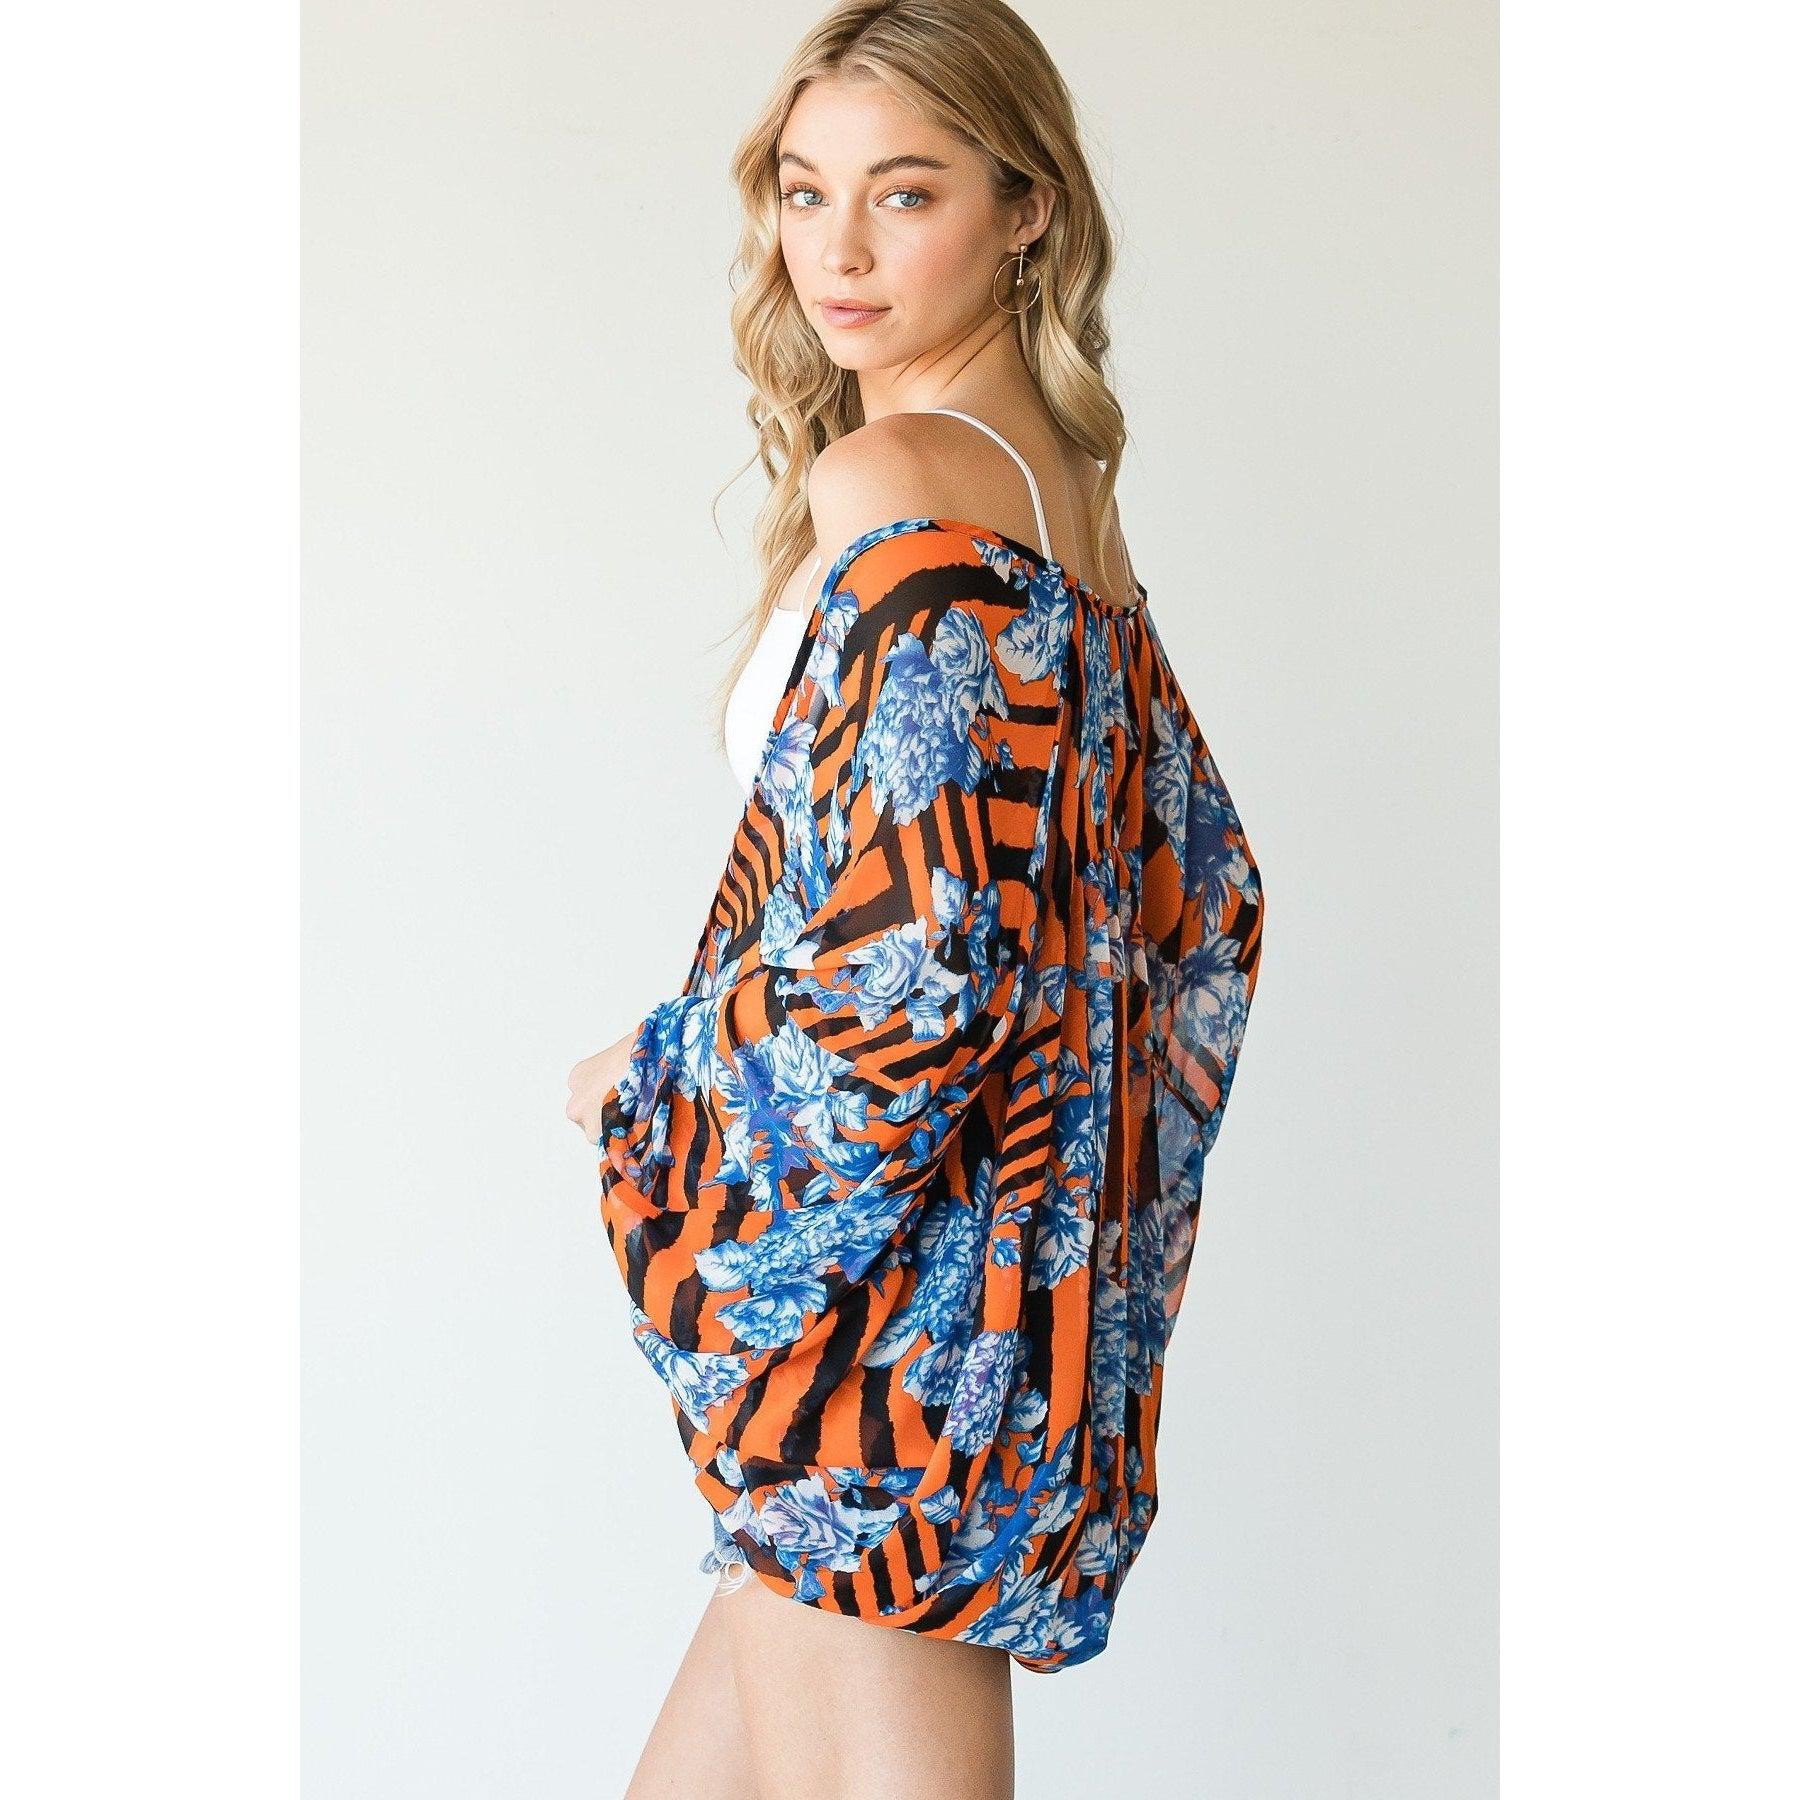 Stripes And Floral Print Lightweight Kimono-Kimonos-NXTLVLNYC